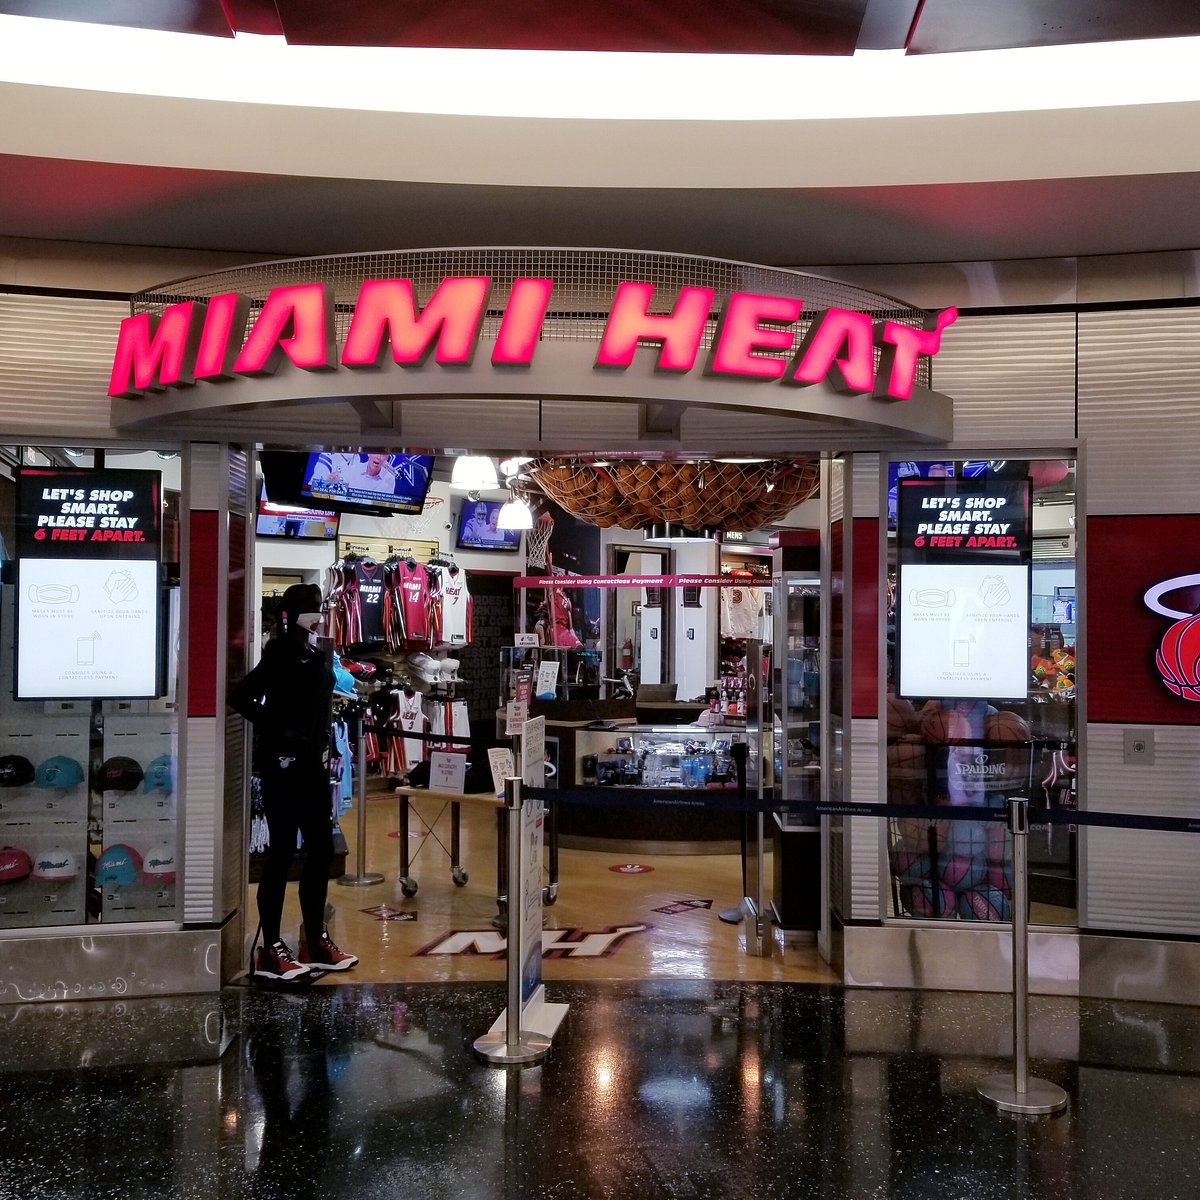 The Miami HEAT Store at Dolphin Mall - Sportswear Store in Miami